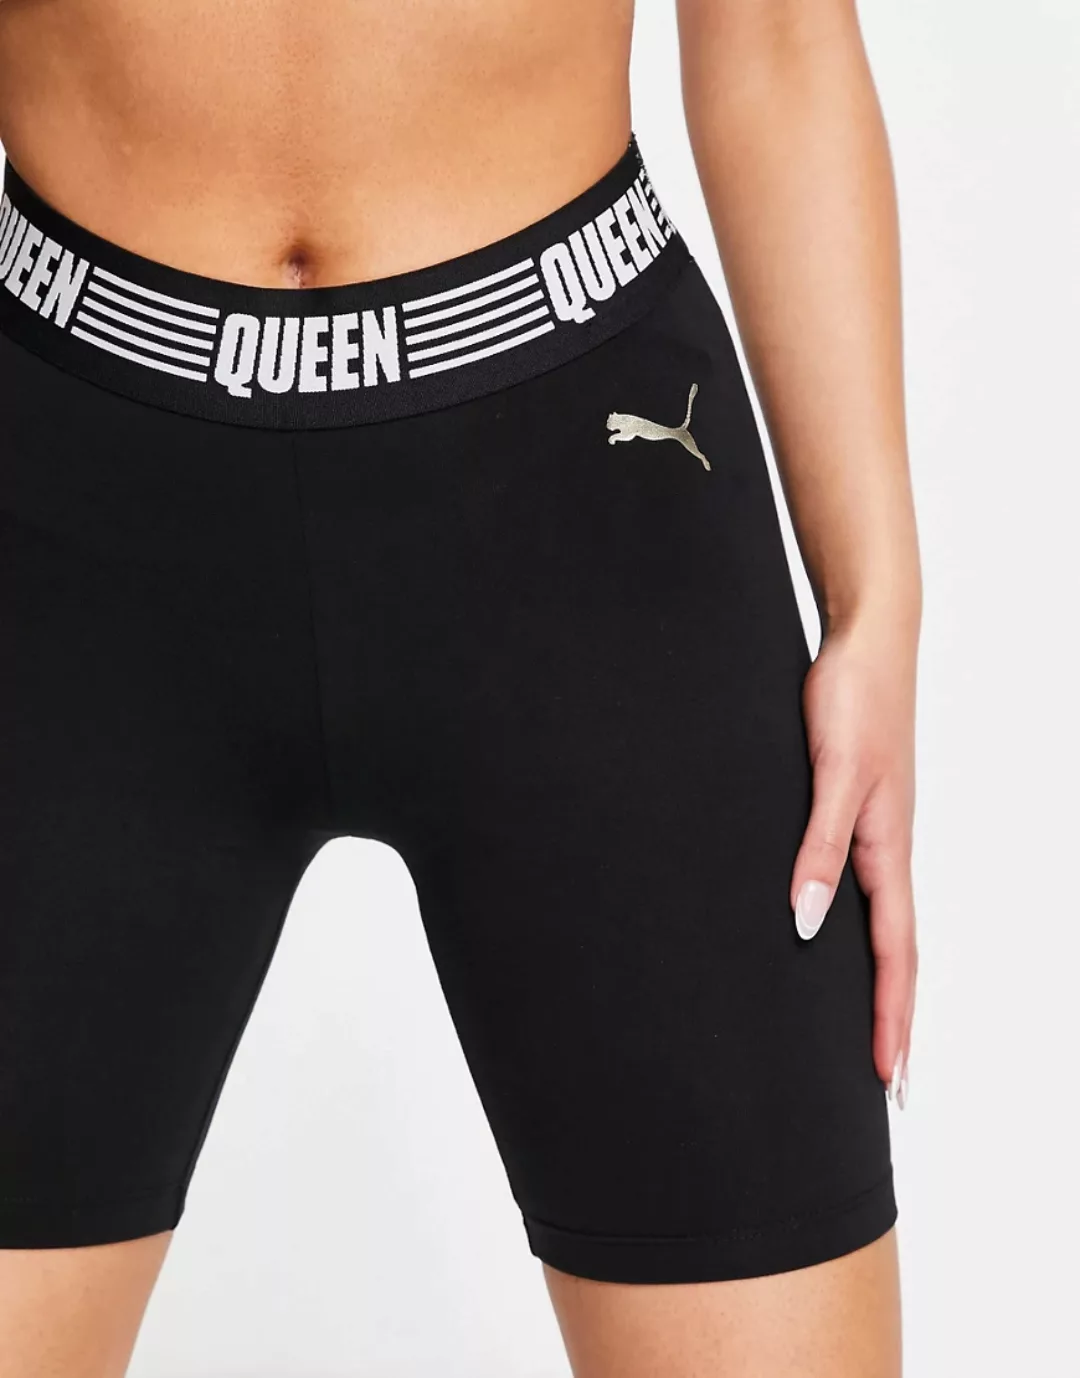 Puma – Queen – Leggings-Shorts mit Markenlogo in Schwarz und Gold günstig online kaufen